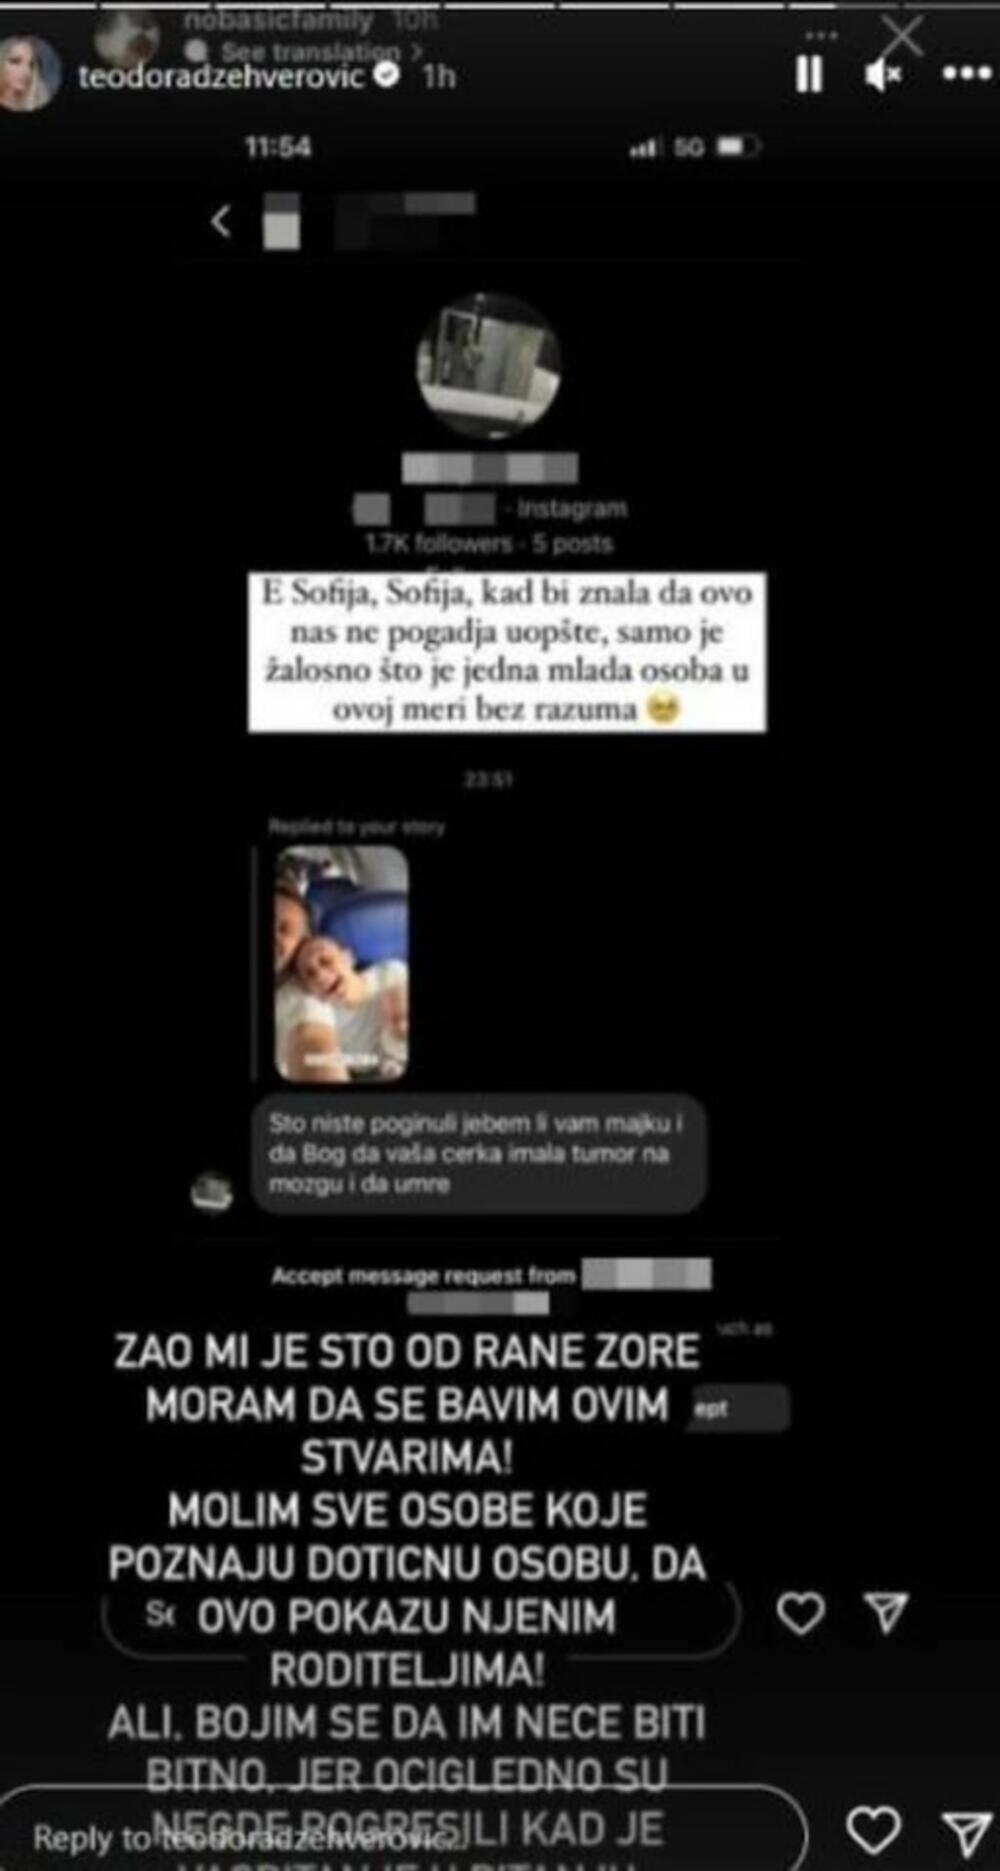 Džehverovićeva je objavila na Instagramu jezive pretnje koje su njen brat Sava i snaha Adriana dobili od korisnika te mreže